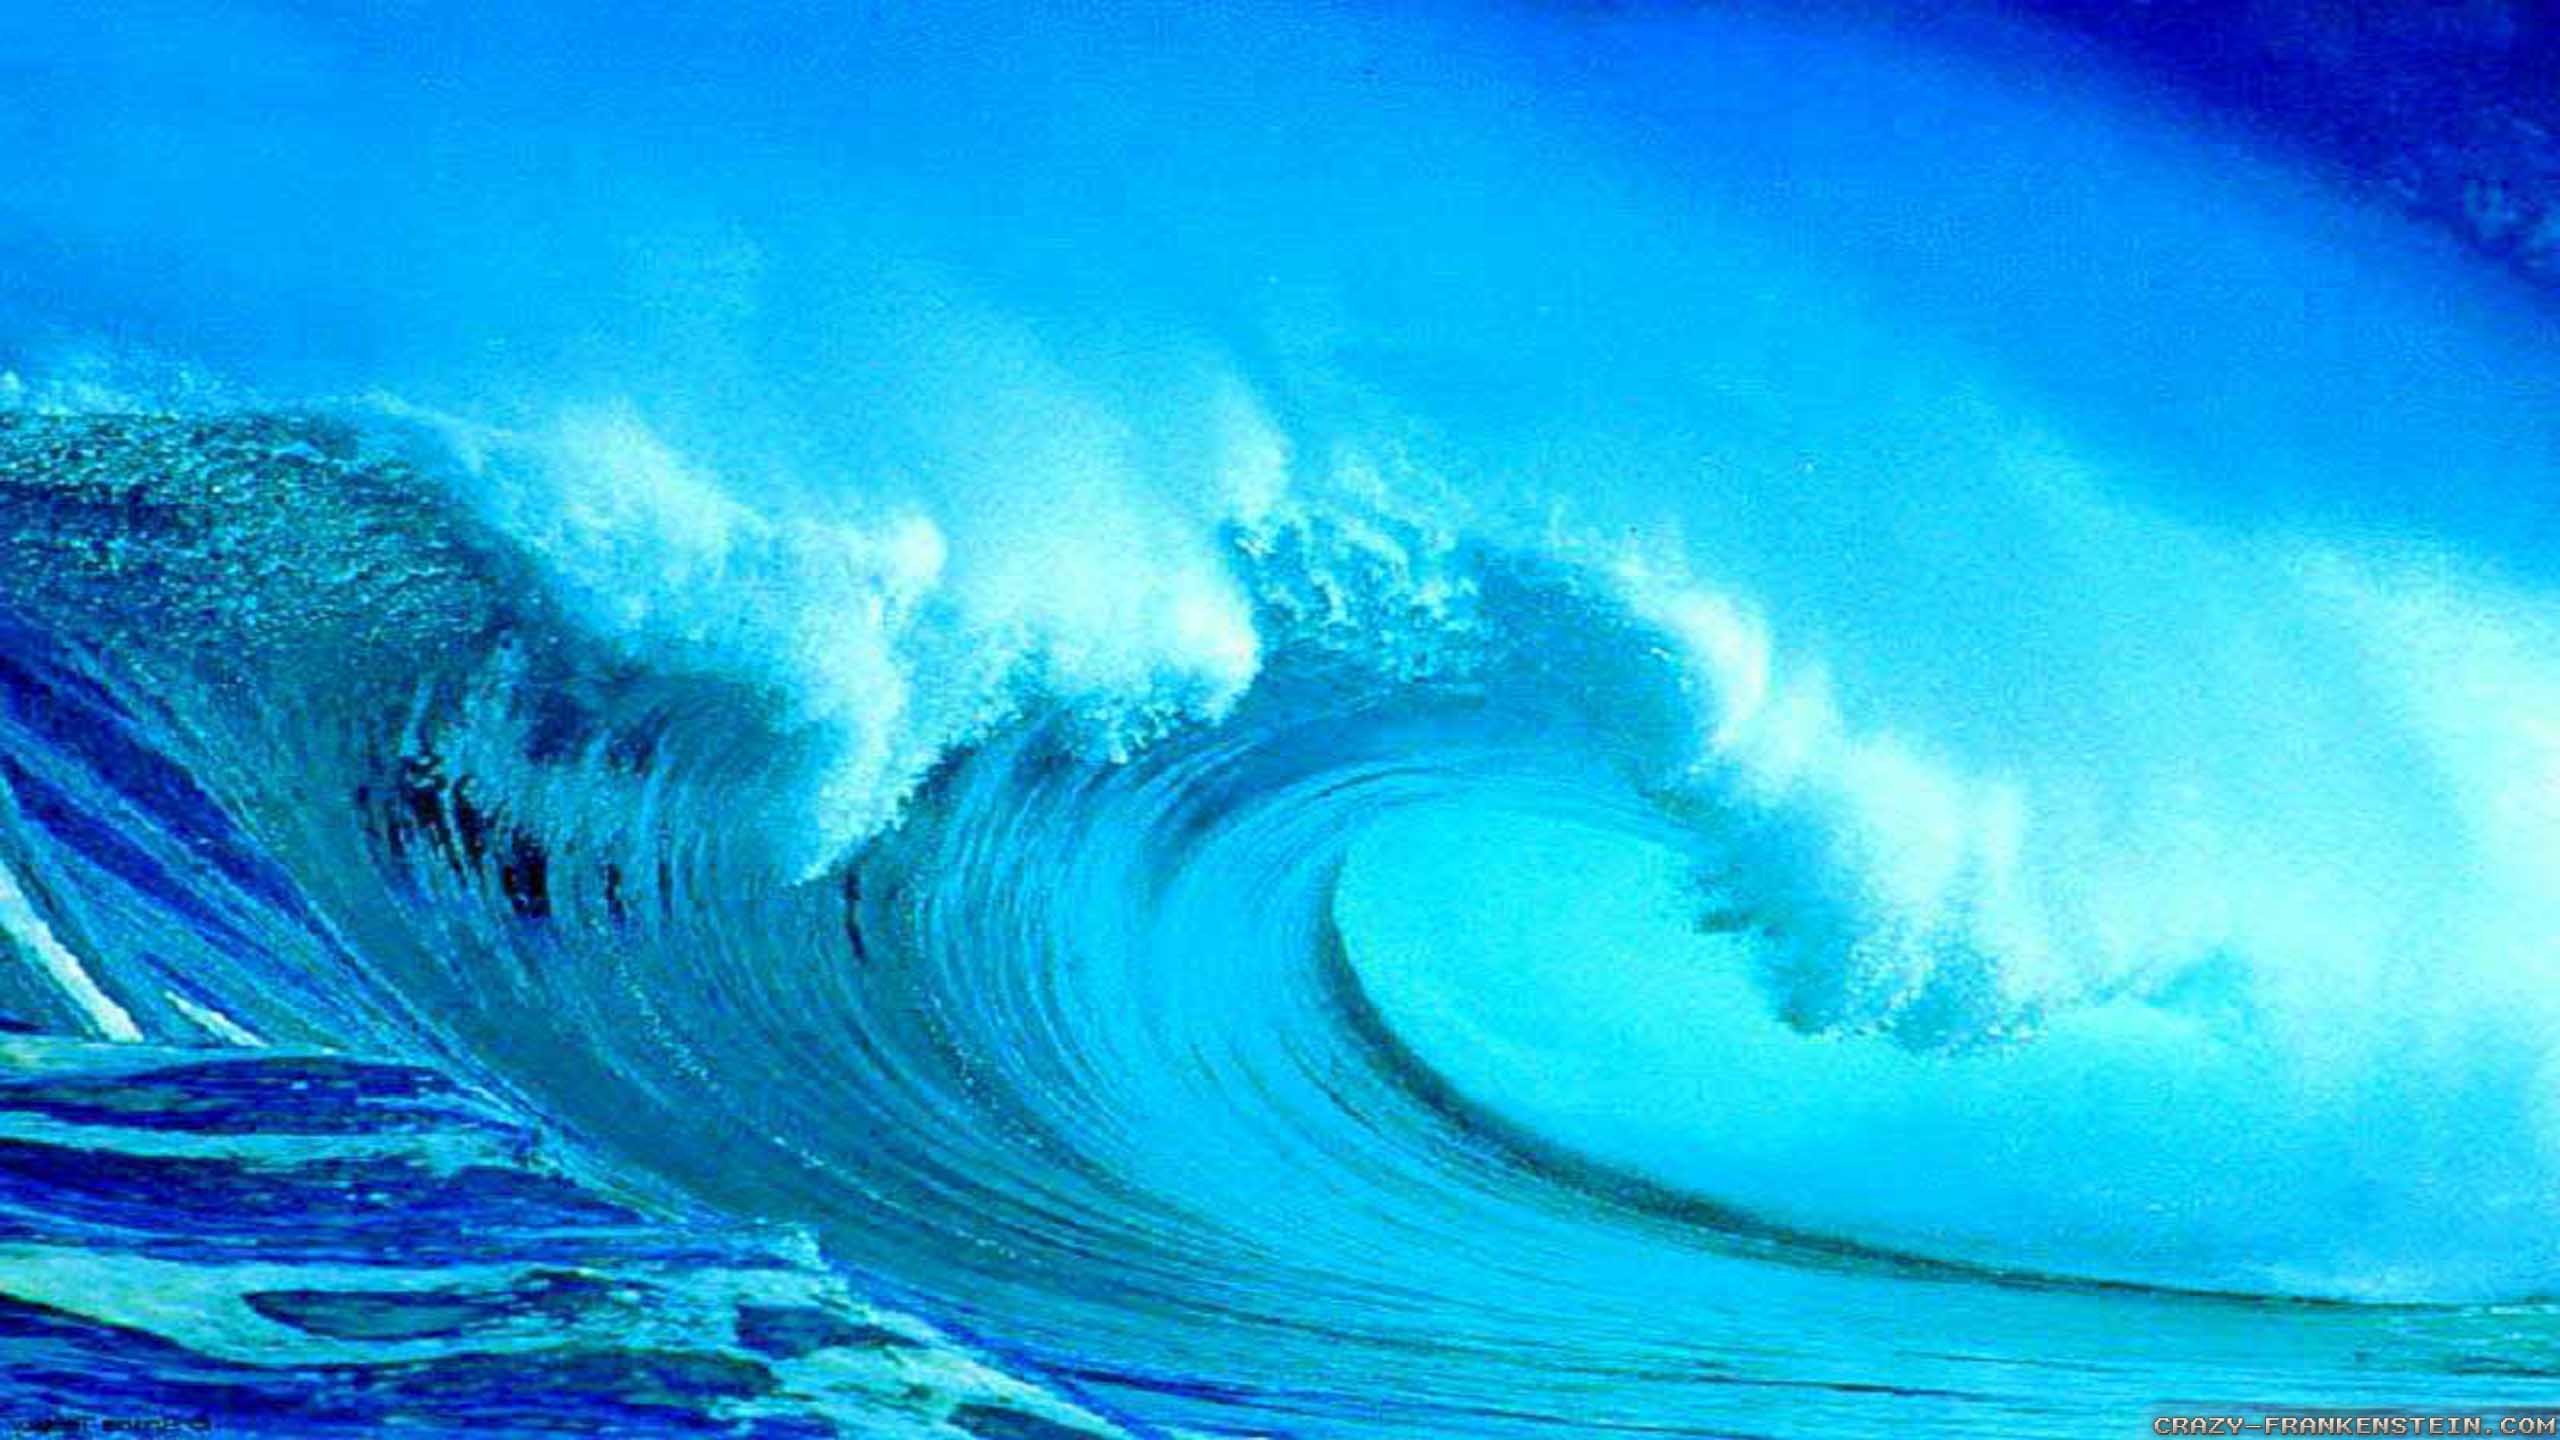 2560x1440 Wallpaper: Blue Summer waves wallpapers. Resolution: 1024x768 | 1280x1024 |  1600x1200. Widescreen Res: 1440x900 | 1680x1050 | 1920x1200